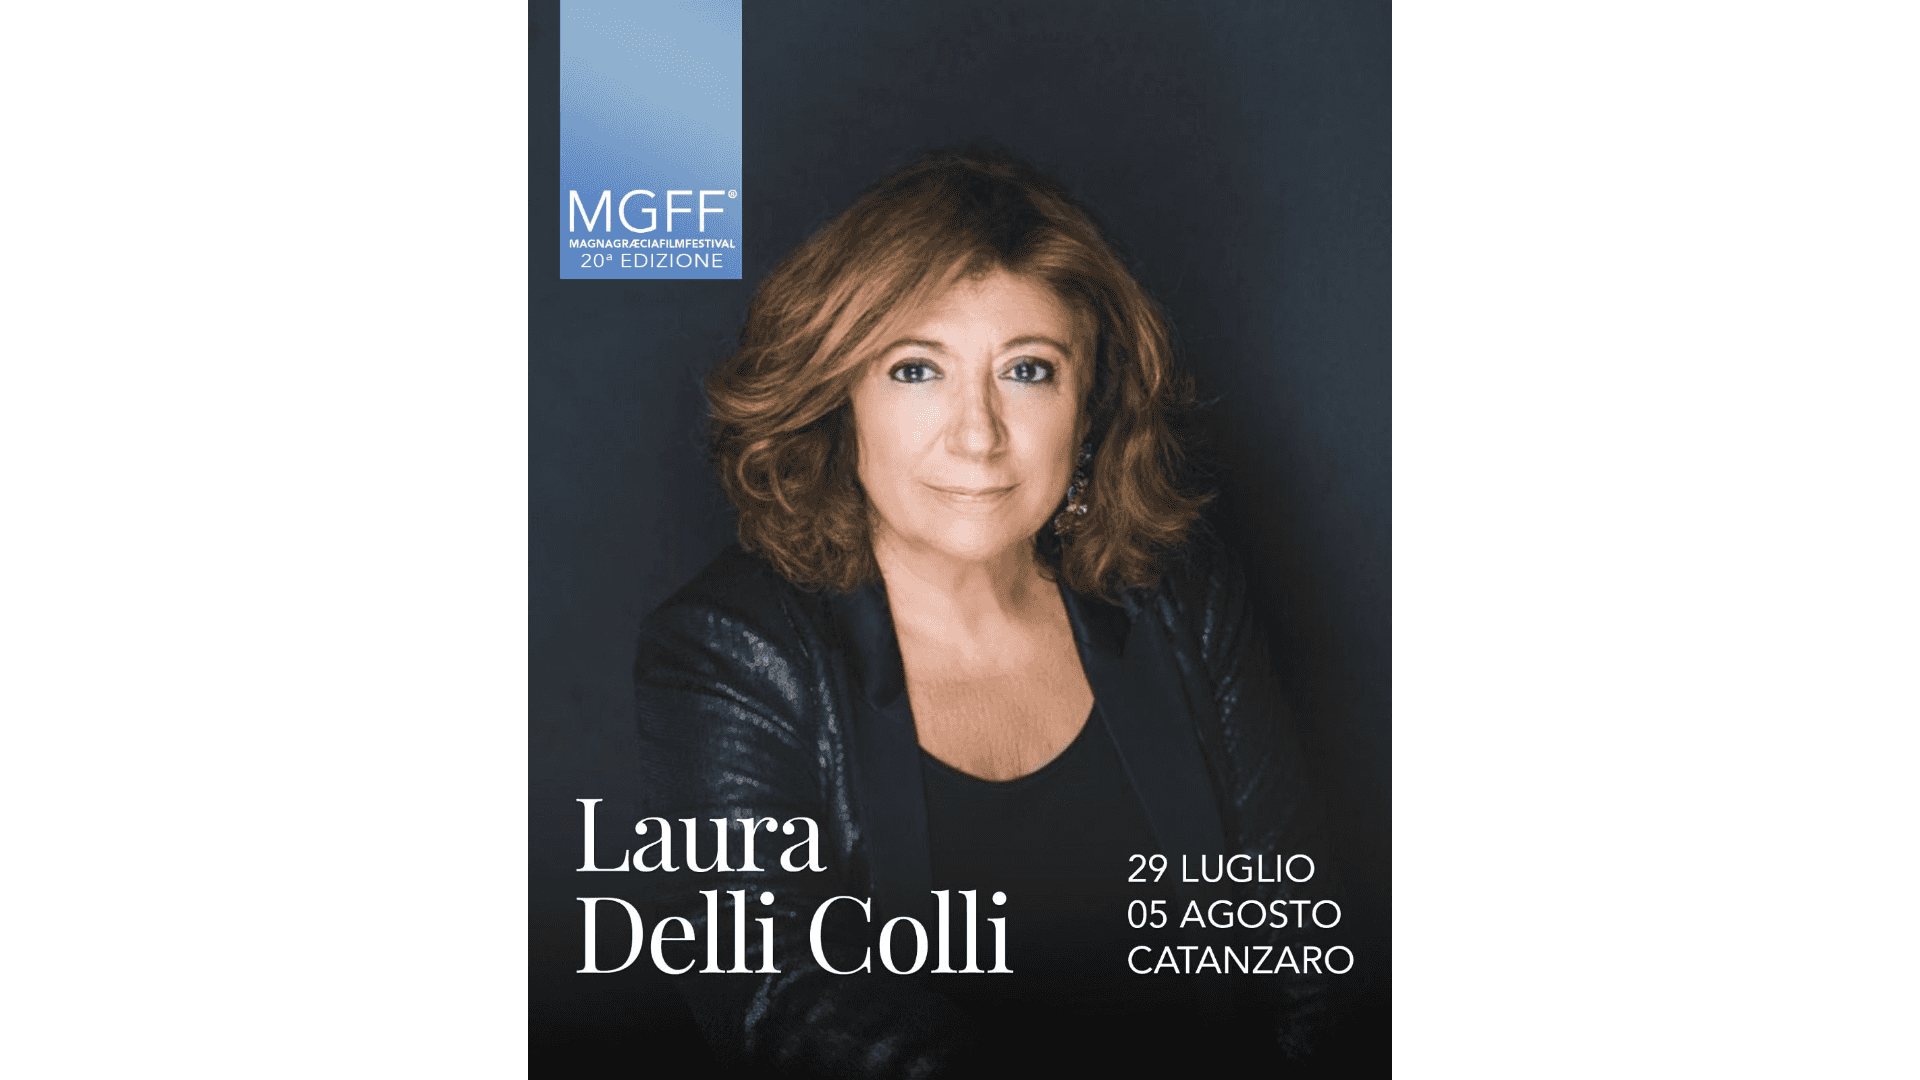 Laura Delli Colli aprirà Magna Graecia Film Festival  a Catanzaro il prossimo 29 luglio